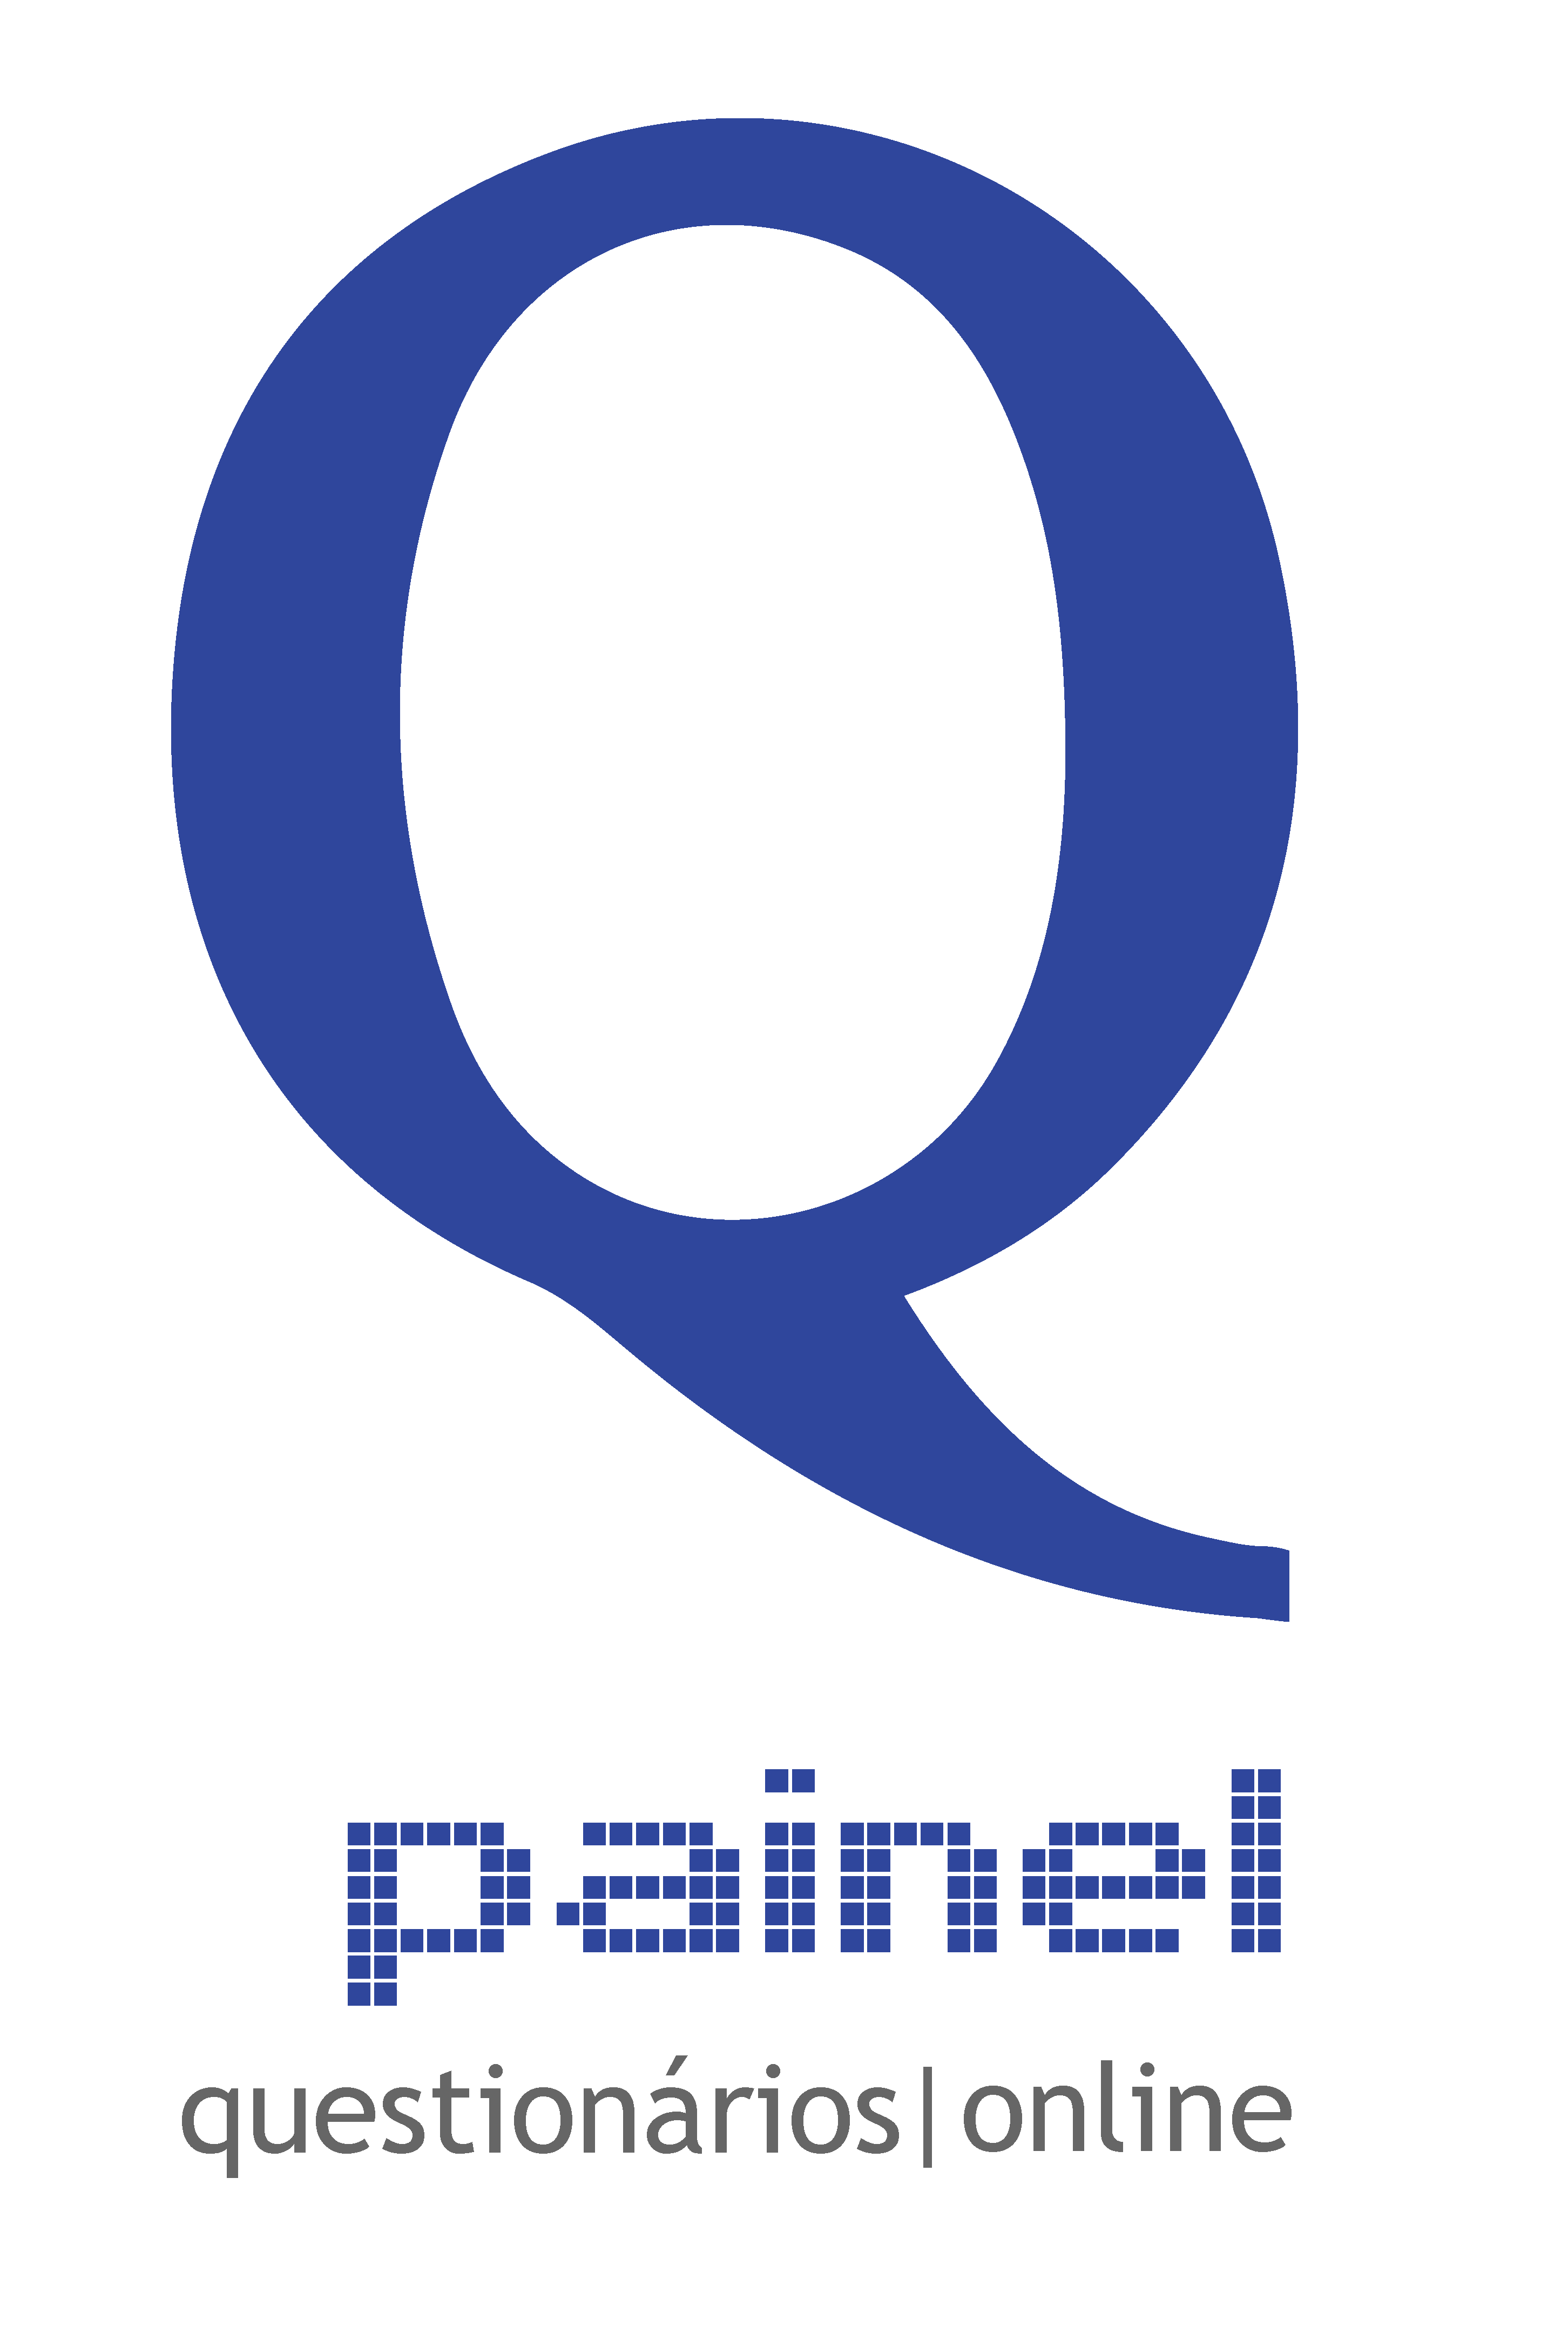 Painel questionários | online